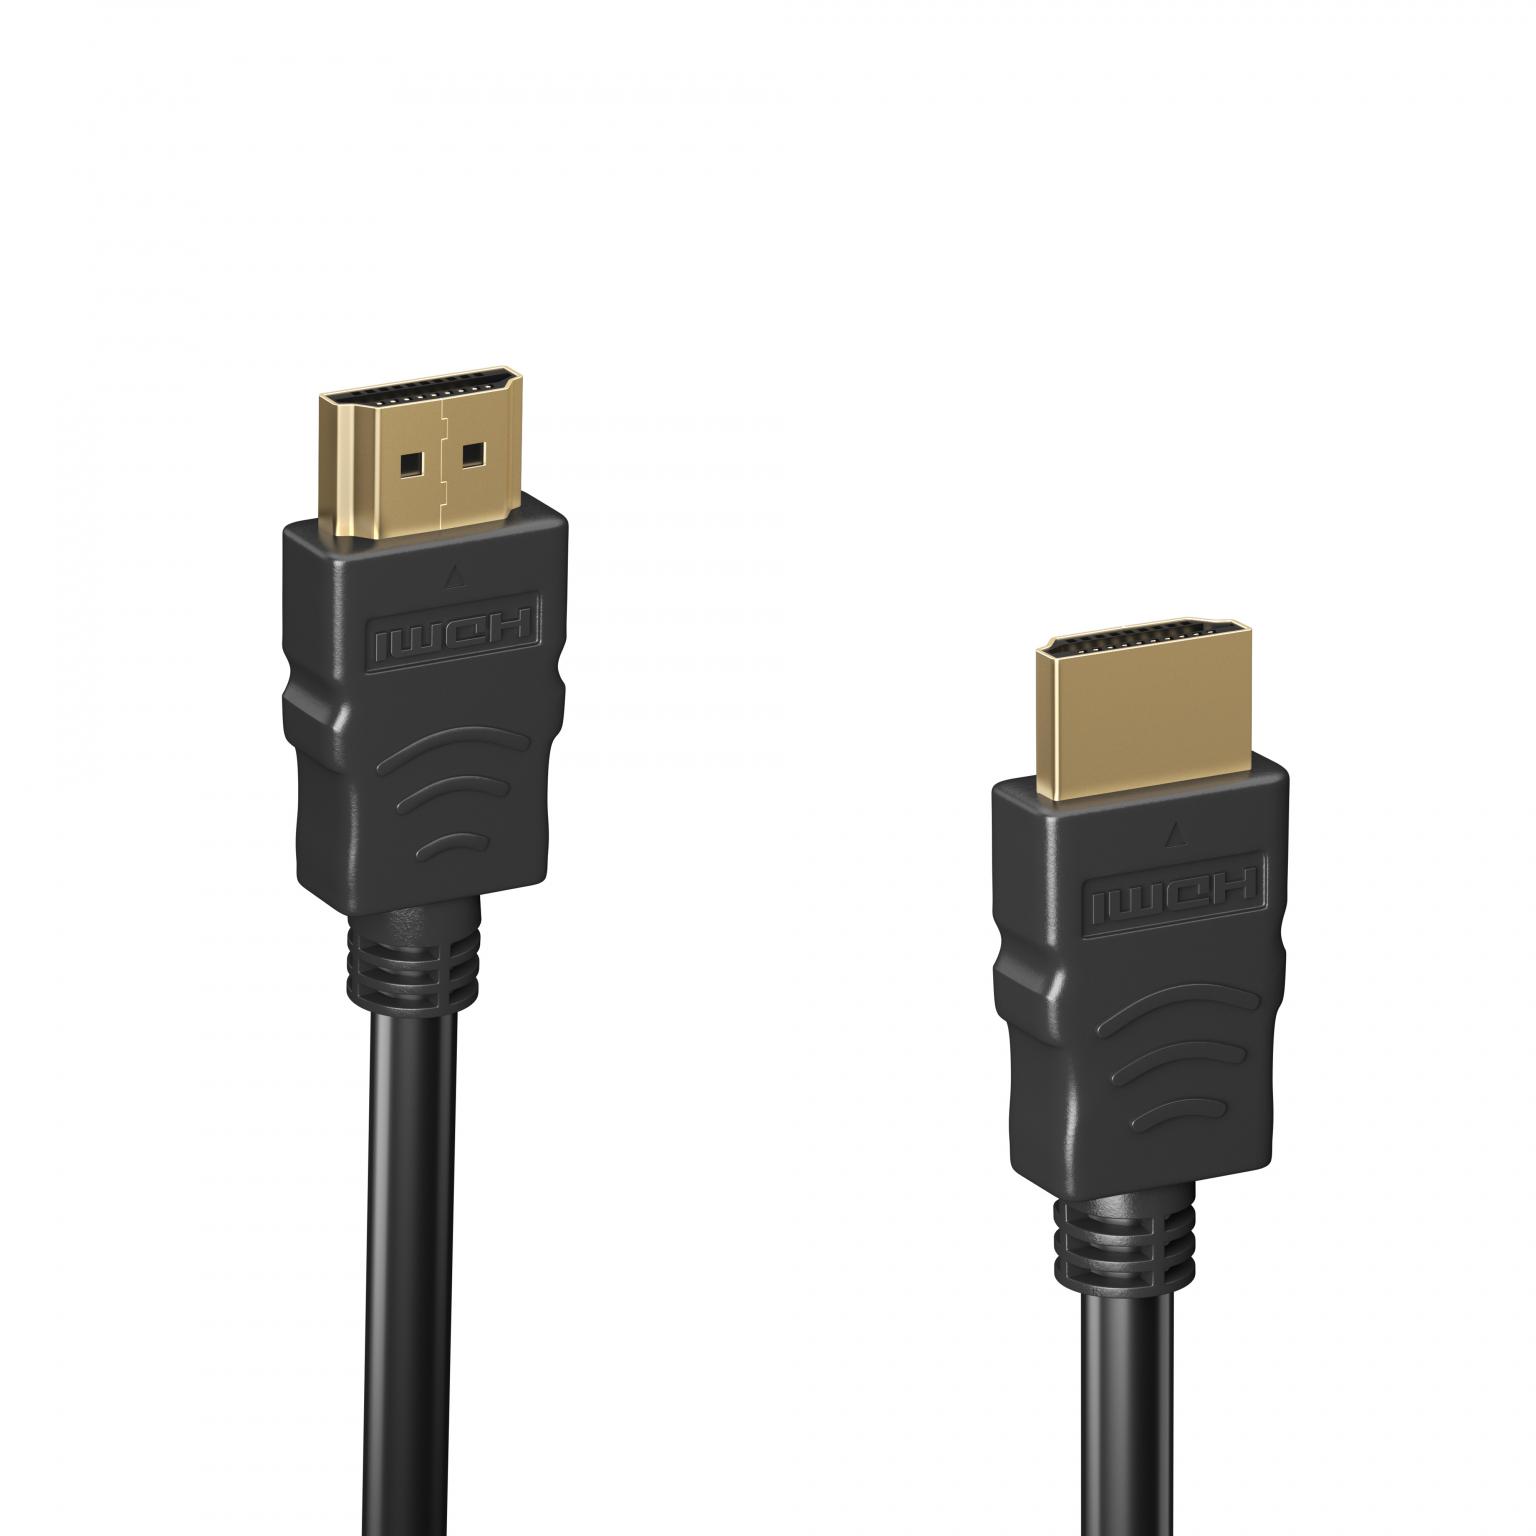 HDMI Kabel - 15 meter - Gold Plated - High Speed - 10.2 Gbps - Full HD 1080p - 3D - 4K@30 Hz - ARC - Zwart